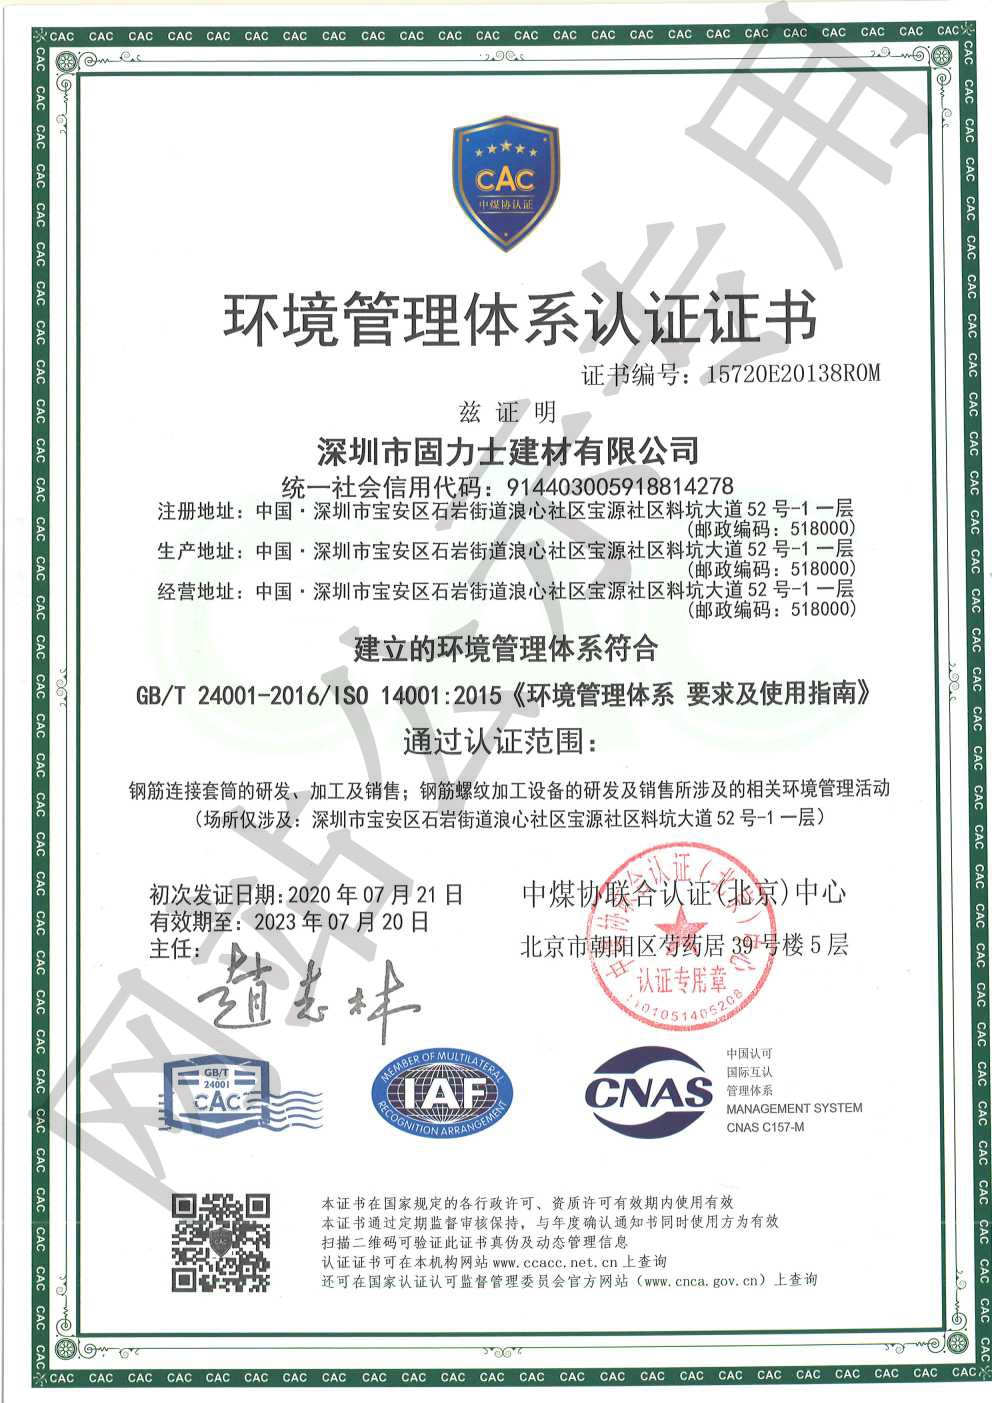 古田ISO14001证书